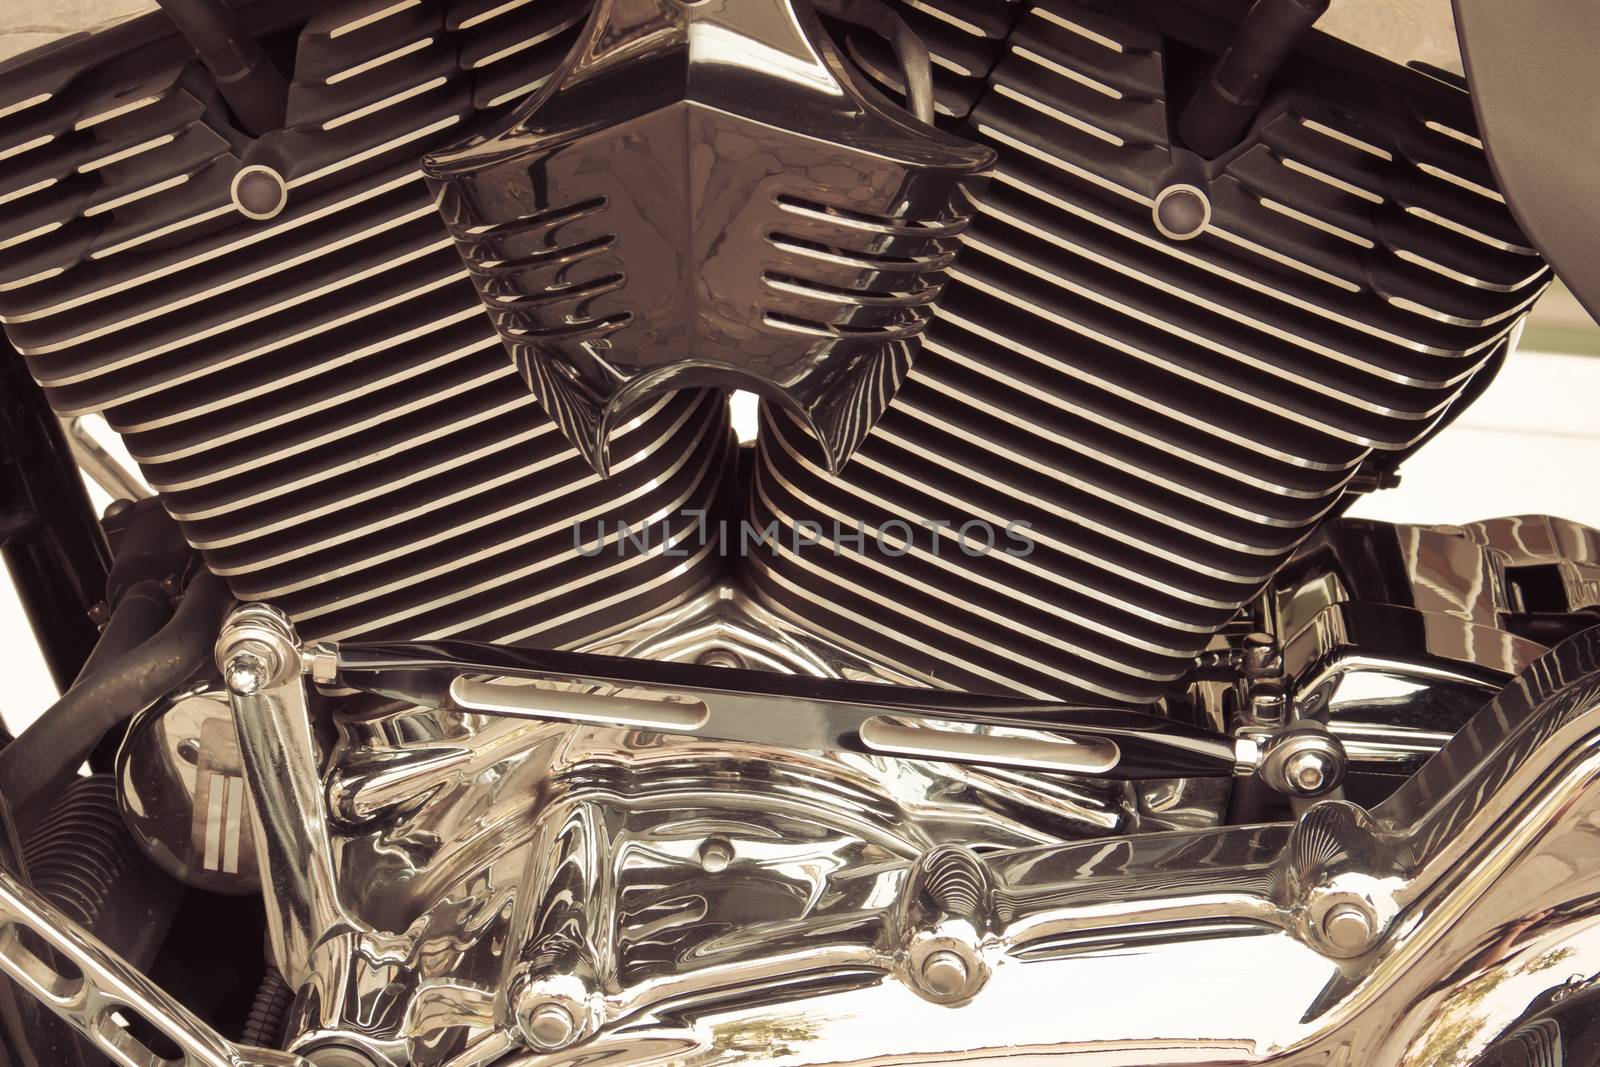 Motorbike's chromed engine background sepia style